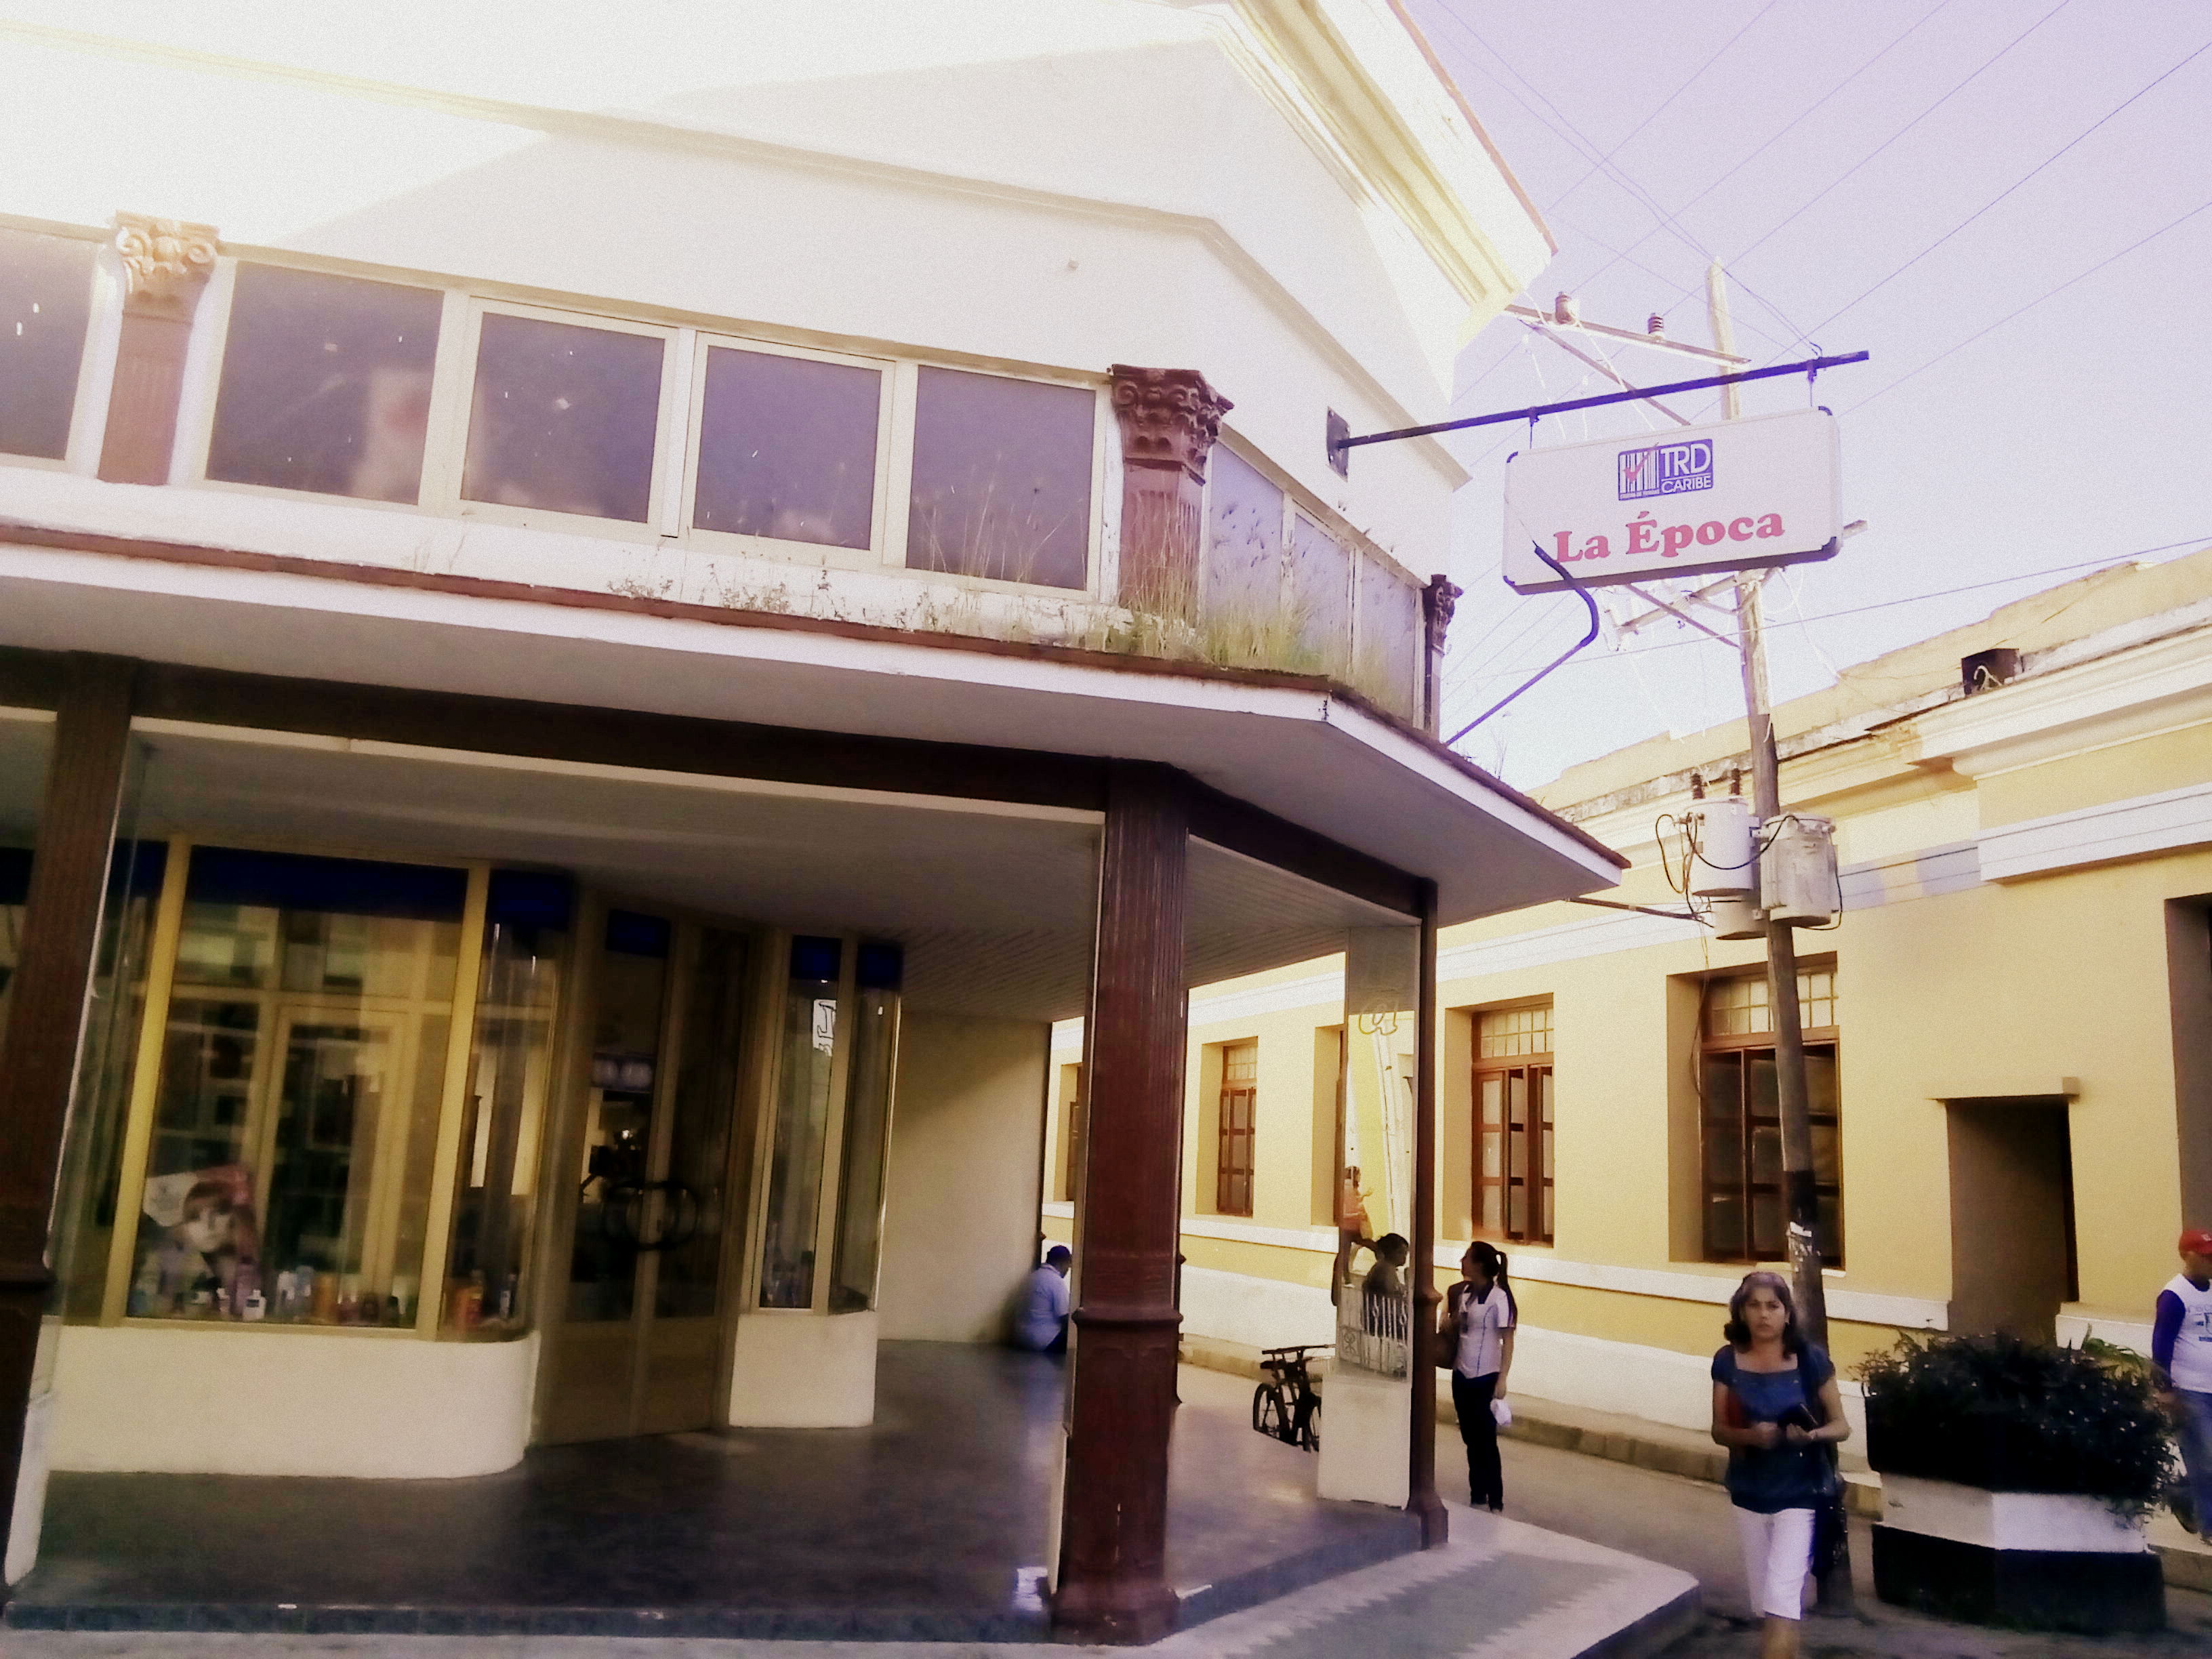 Tienda Recaudadora de Divisa (TRD) in Santa Clara, Cuba.